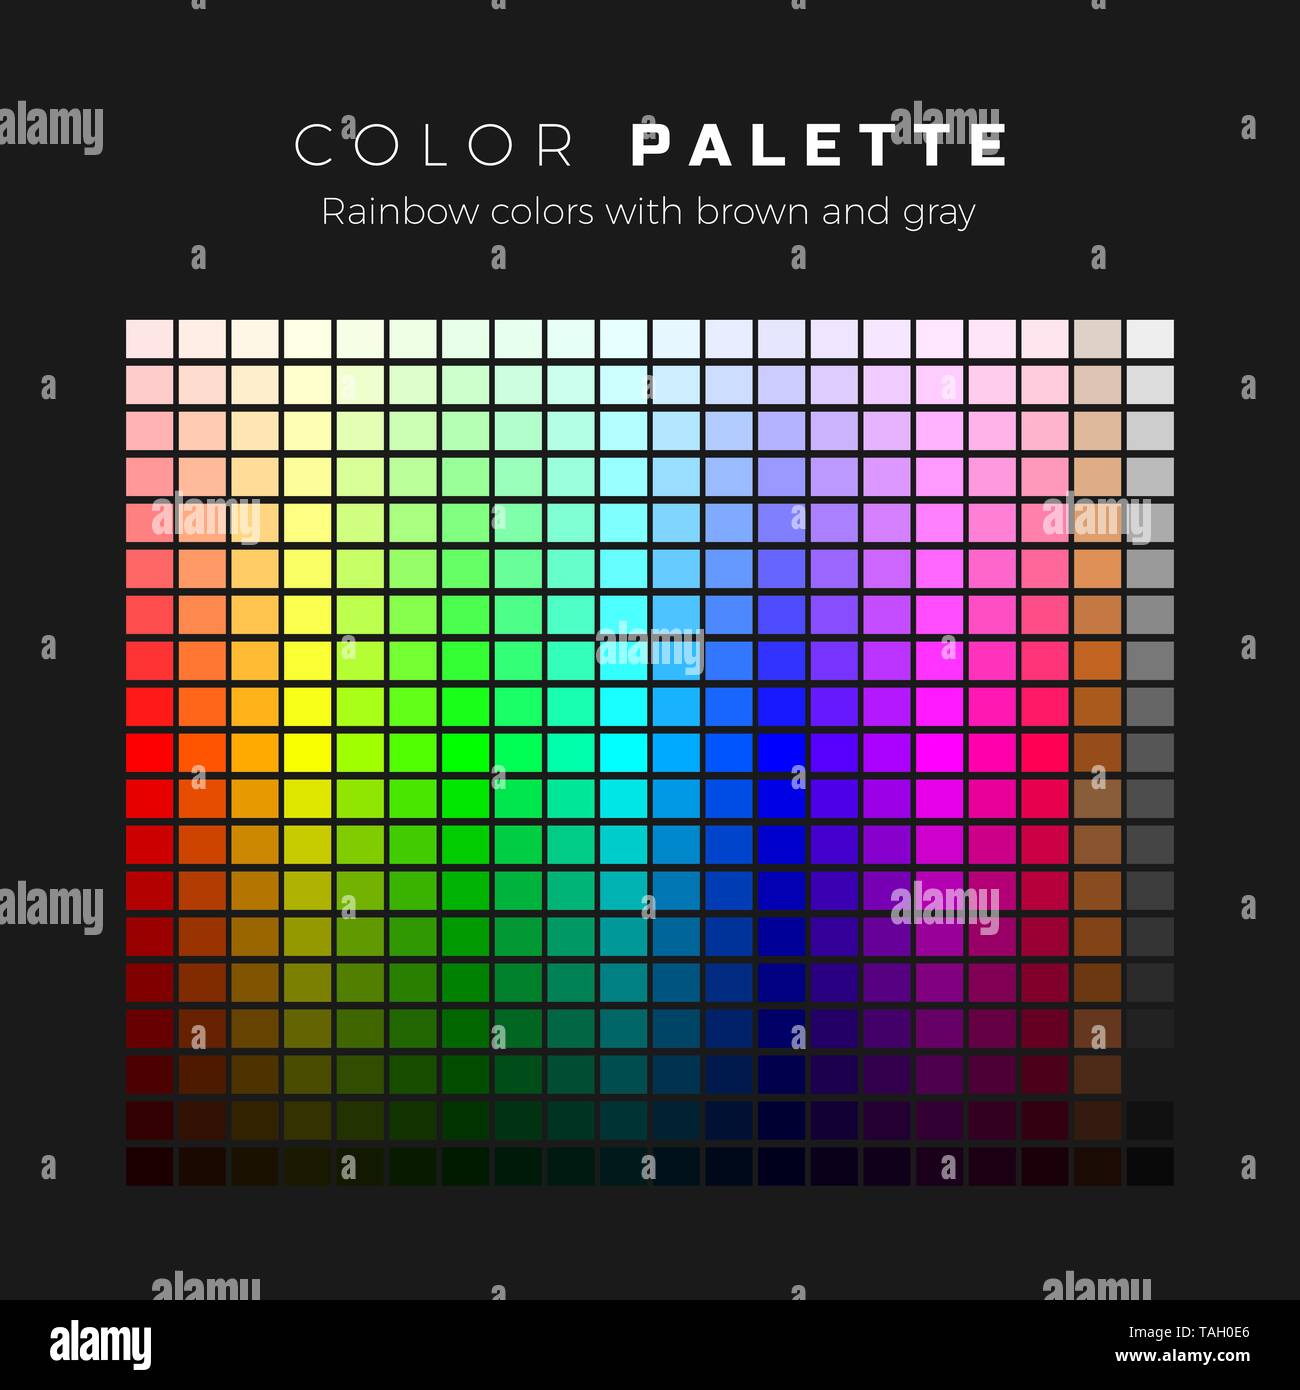 Palette colorate. Uno spettro completo di colori con il marrone e le sfumature di grigio. Set di colori della tavolozza arcobaleno. Illustrazione Vettoriale Illustrazione Vettoriale